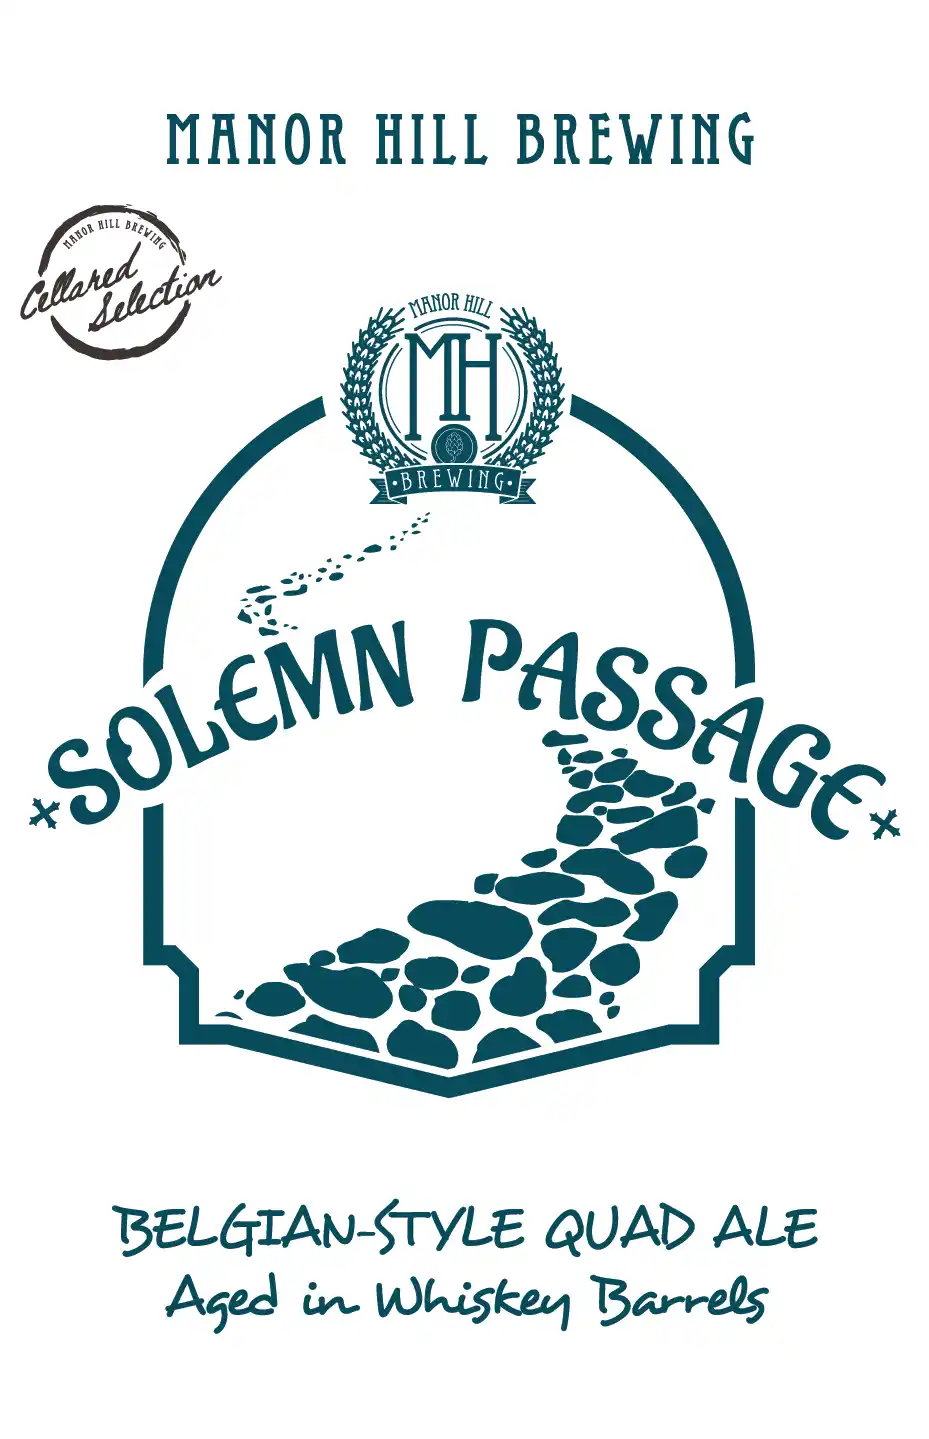 SOLEMN PASSAGE